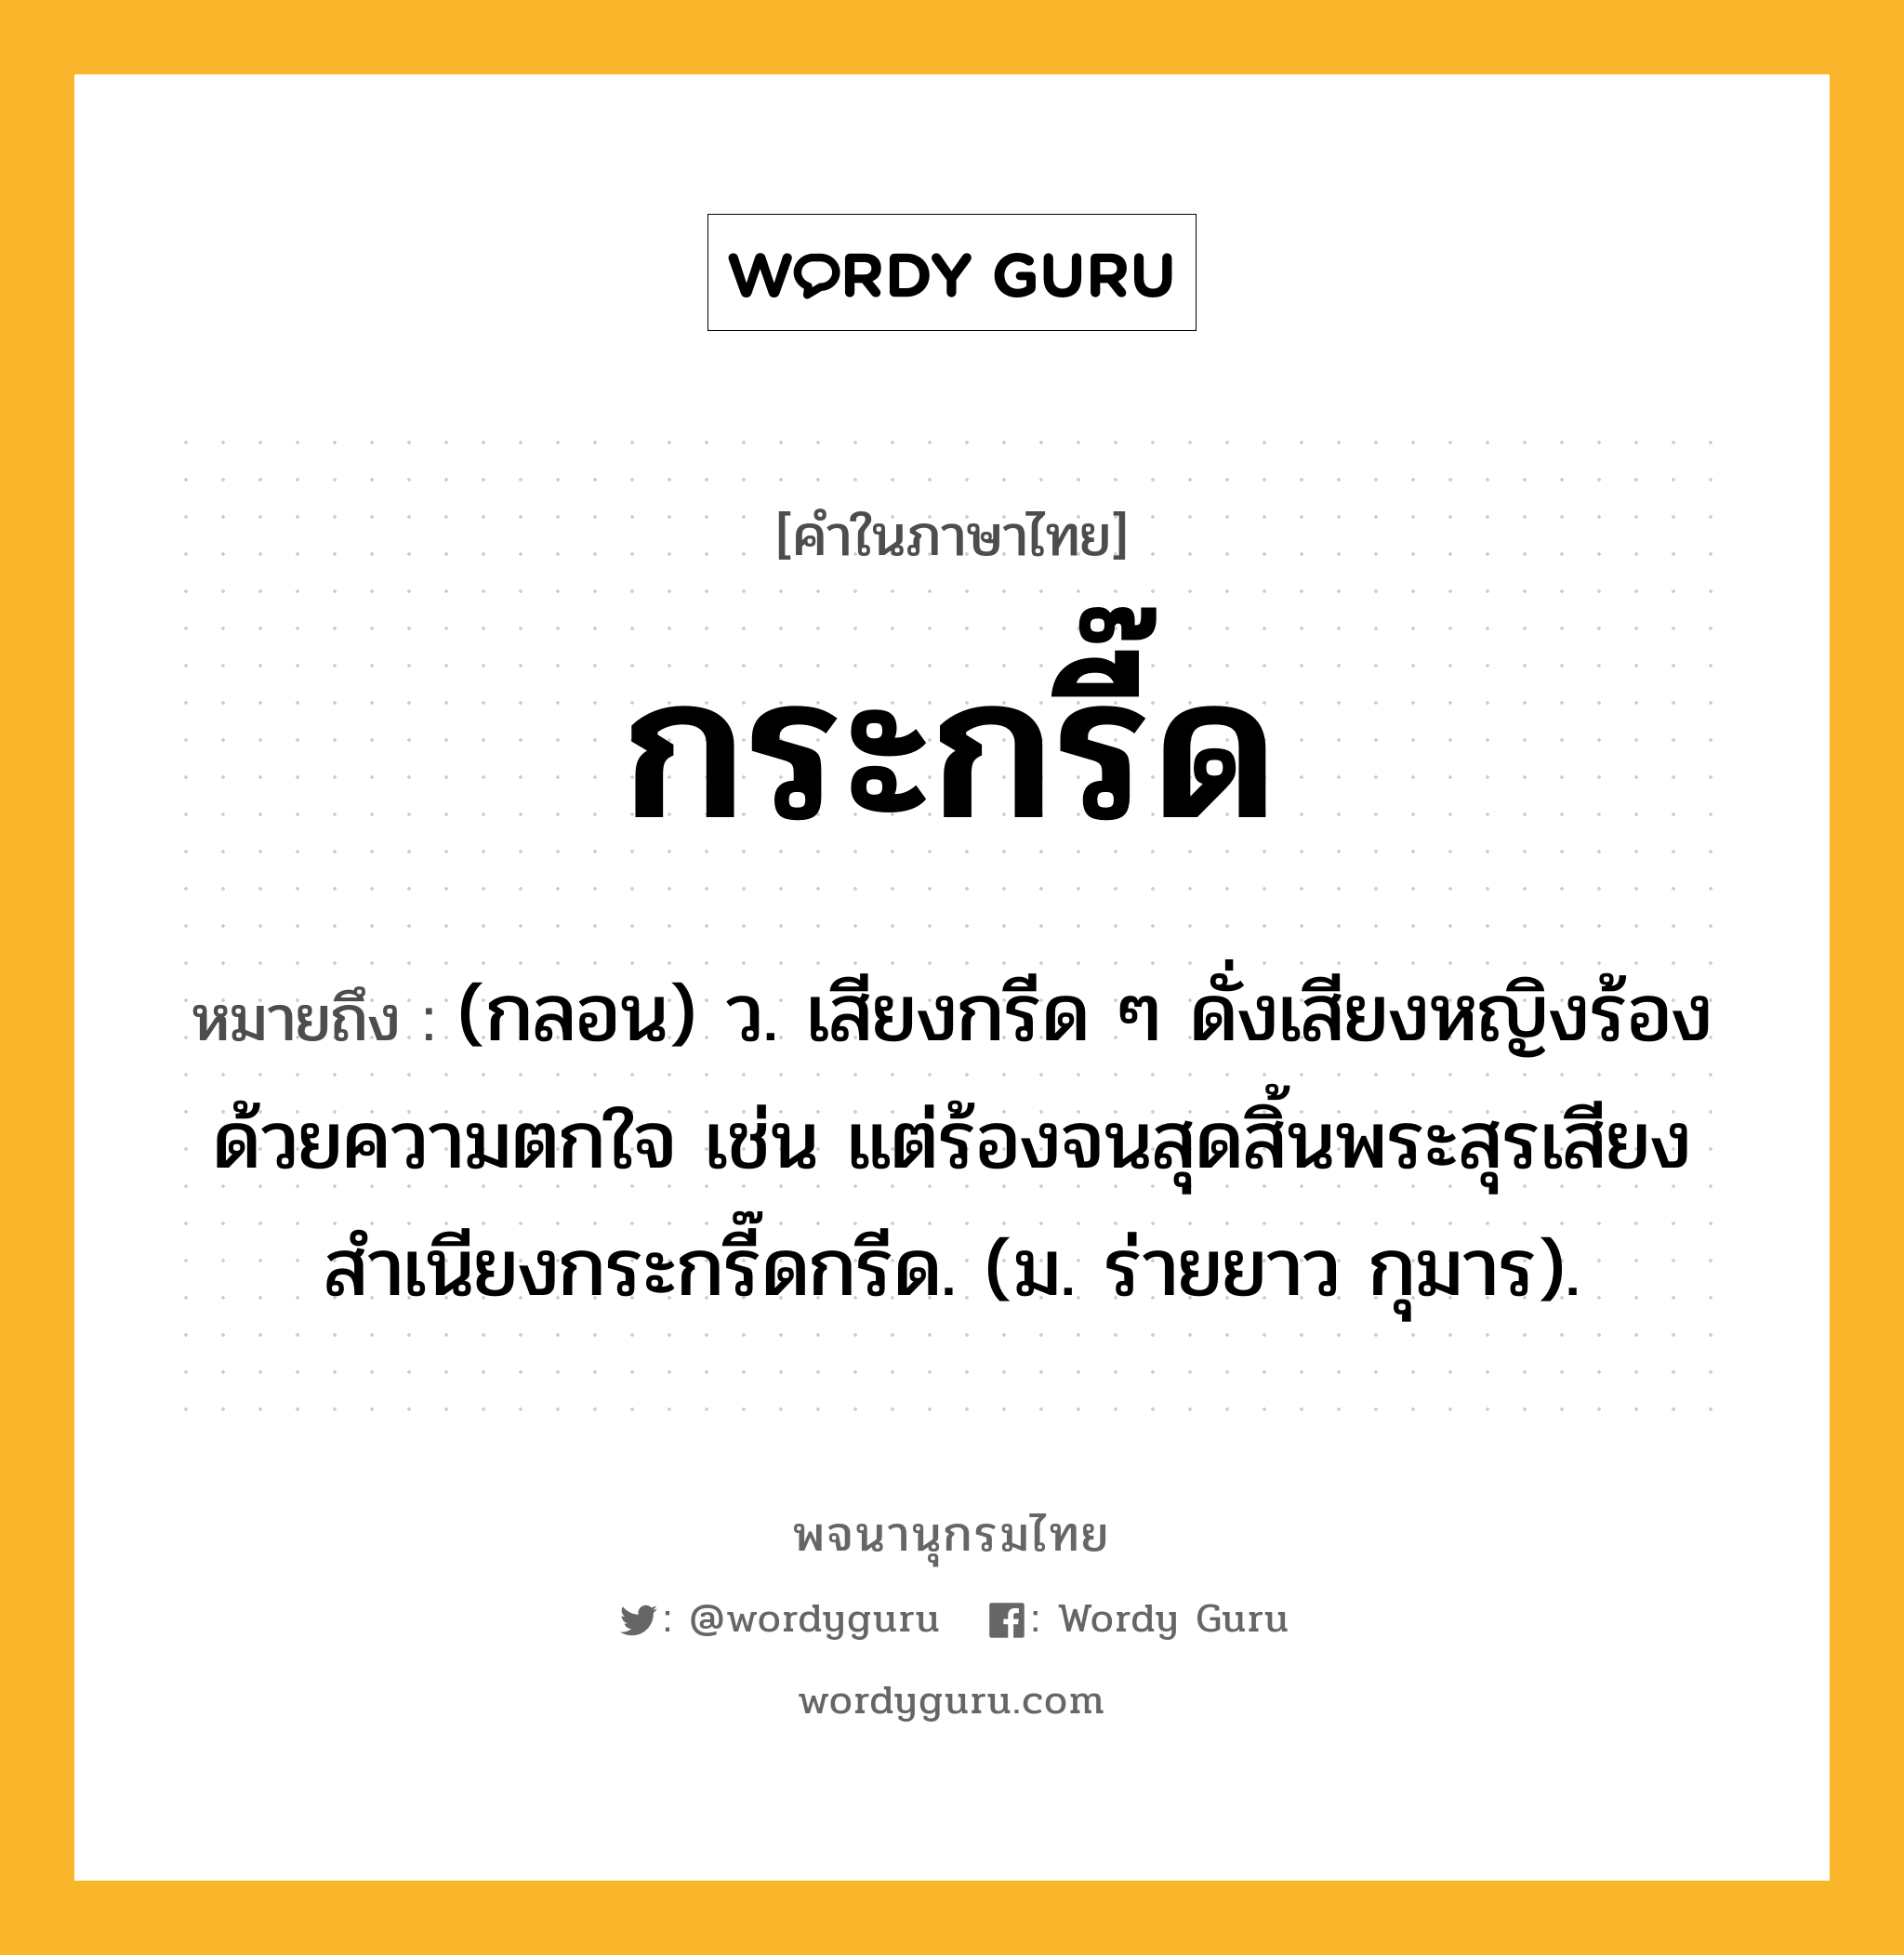 กระกรี๊ด หมายถึงอะไร?, คำในภาษาไทย กระกรี๊ด หมายถึง (กลอน) ว. เสียงกรีด ๆ ดั่งเสียงหญิงร้องด้วยความตกใจ เช่น แต่ร้องจนสุดสิ้นพระสุรเสียงสำเนียงกระกรี๊ดกรีด. (ม. ร่ายยาว กุมาร).